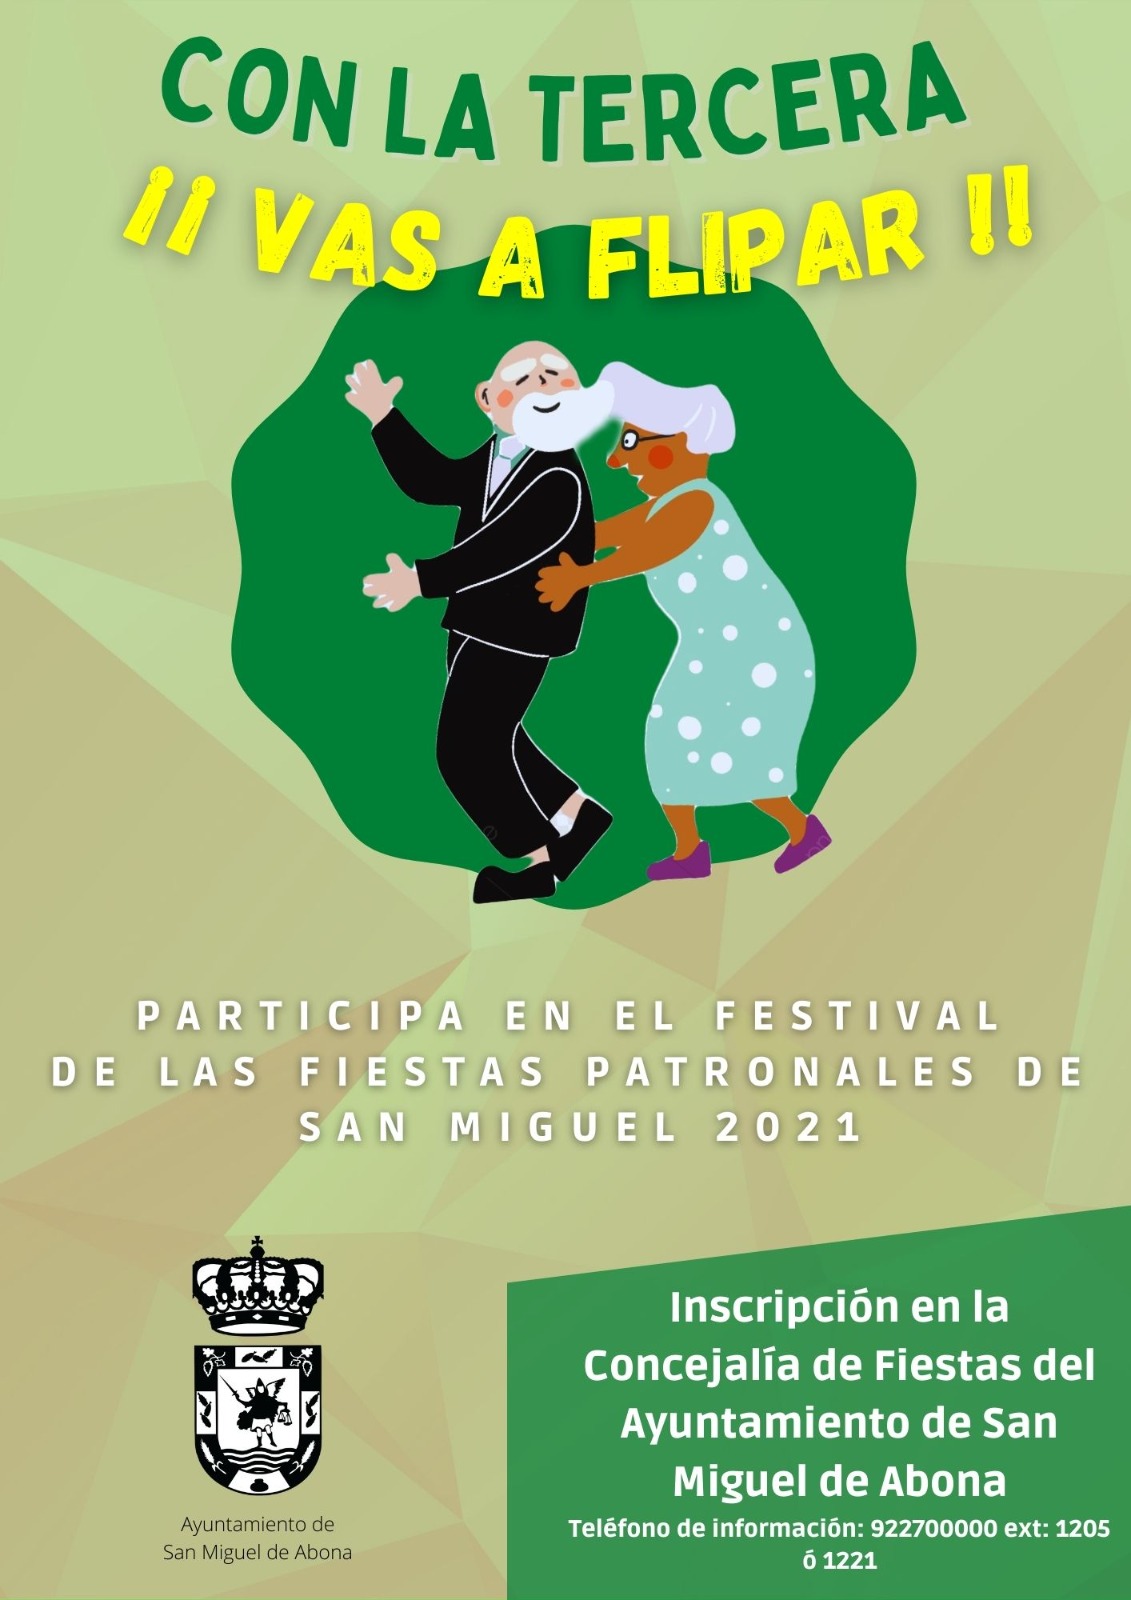 Nuestros mayores también podrán participar en el festival de las Fiestas Patronales